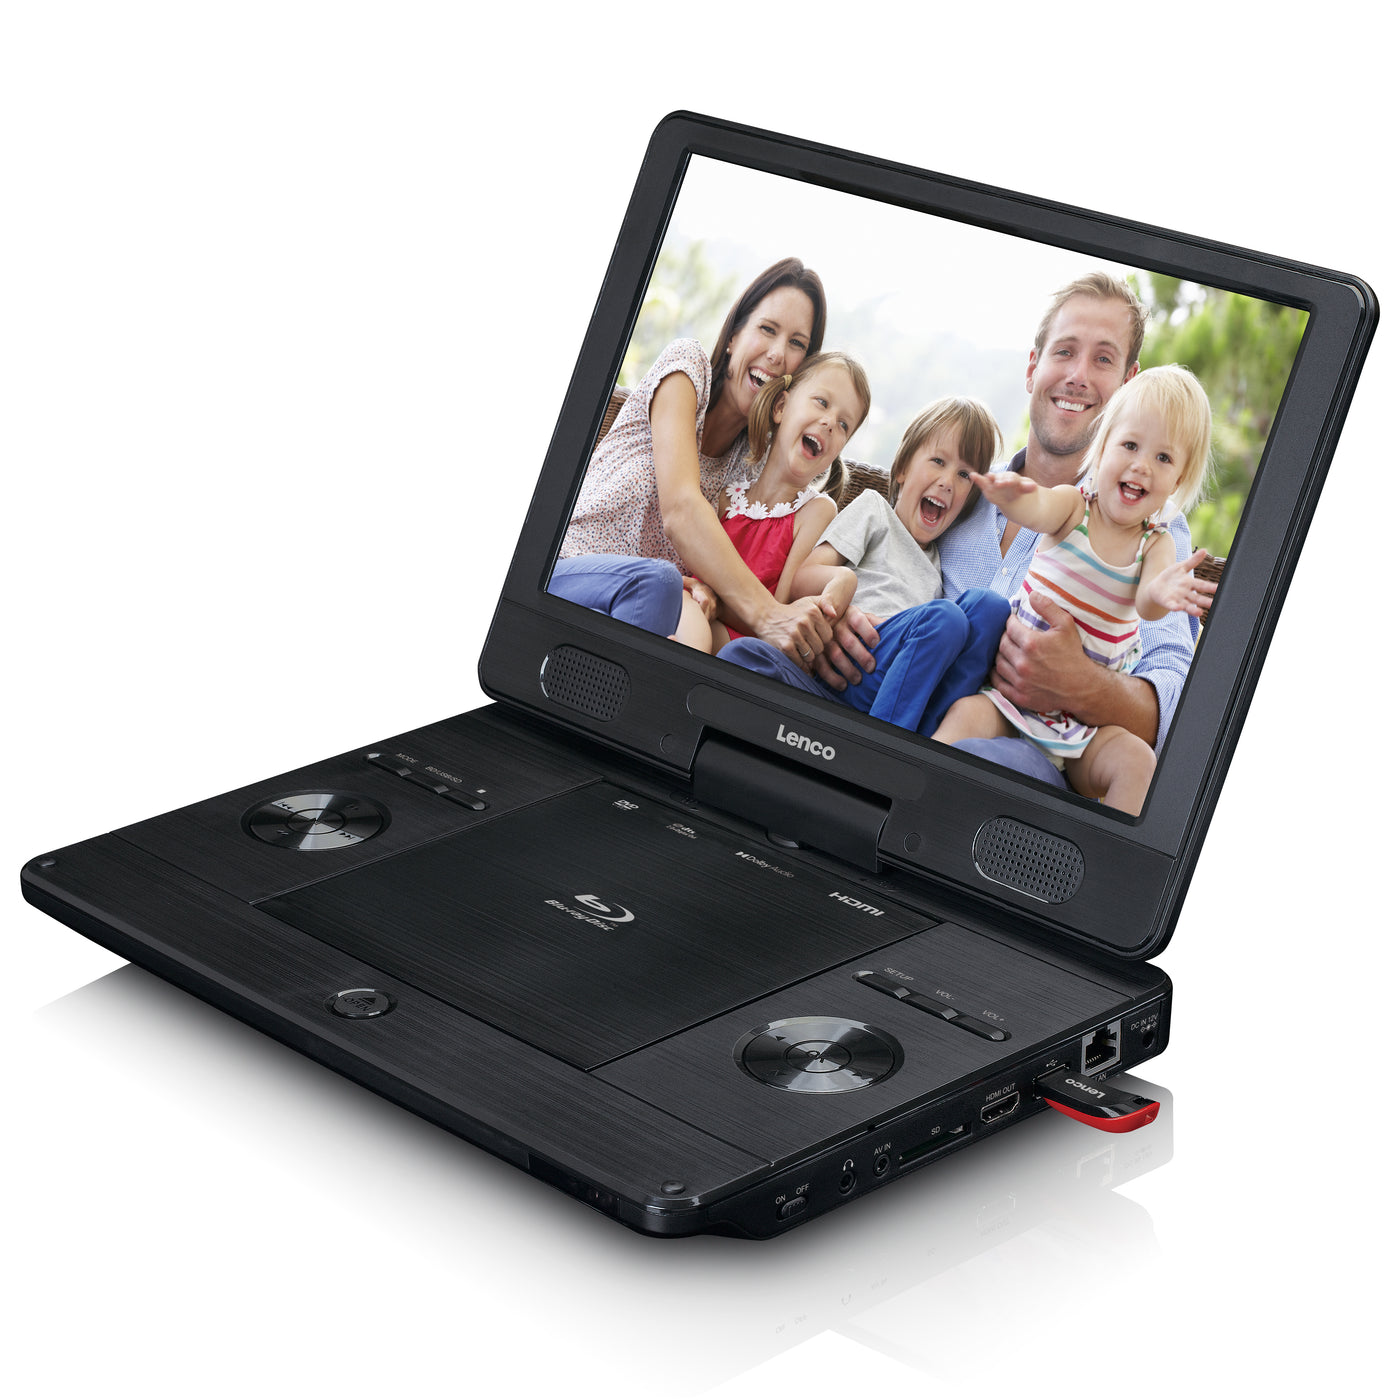 lecteur dvd portable enfant - Votre recherche lecteur dvd portable enfant